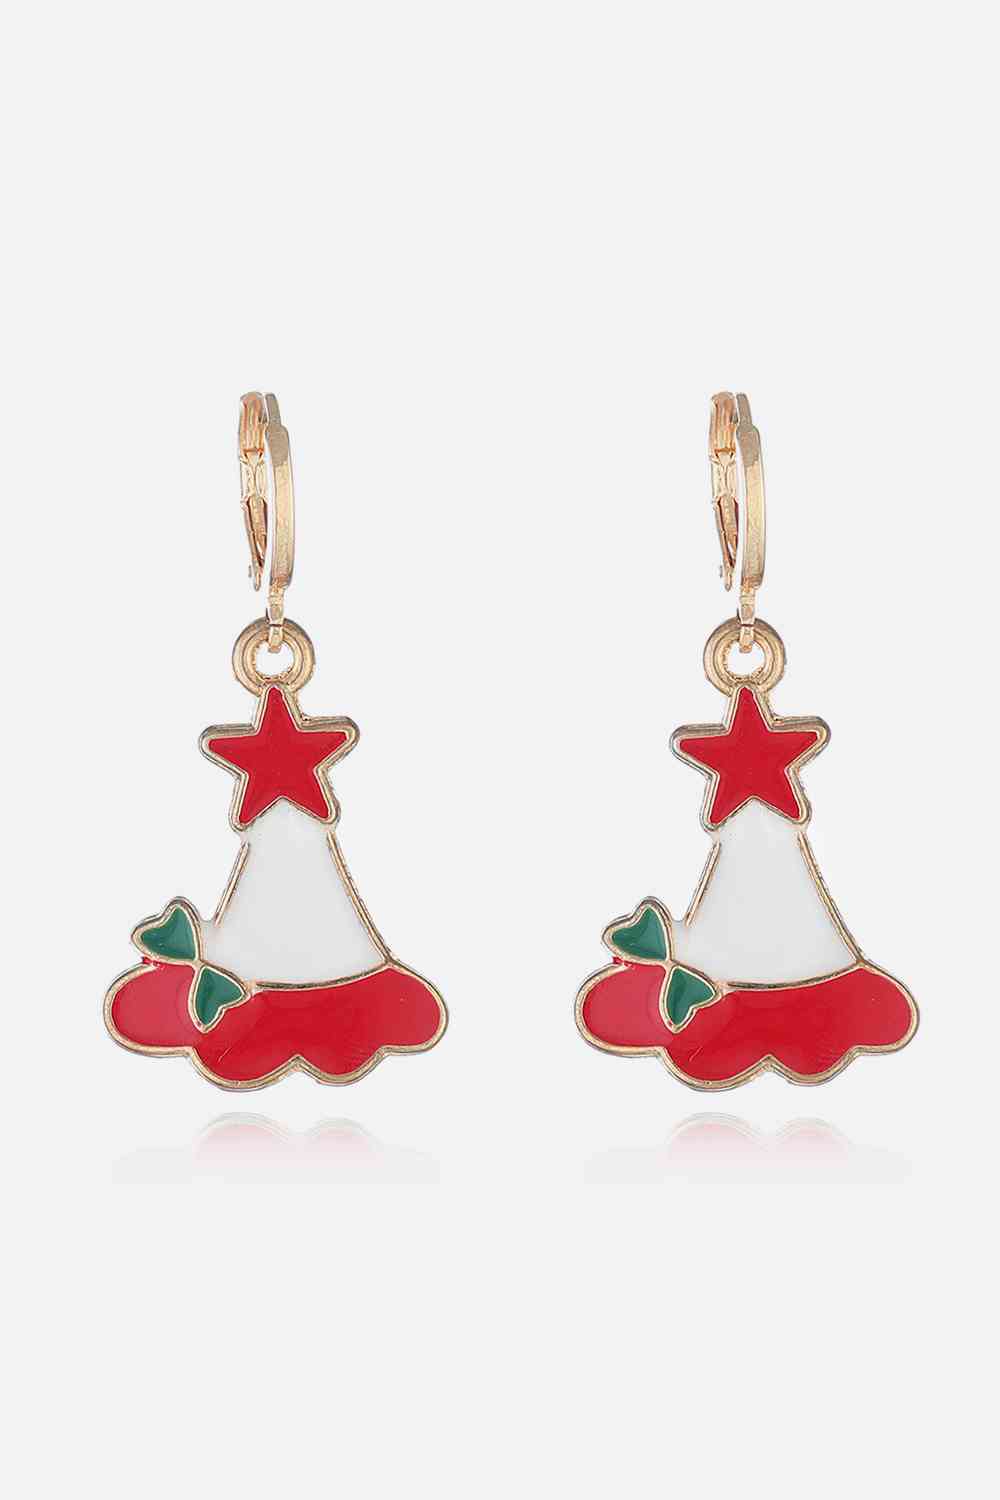 Christmas Theme Alloy Earrings - Style G / One Size - Women’s Jewelry - Earrings - 18 - 2024